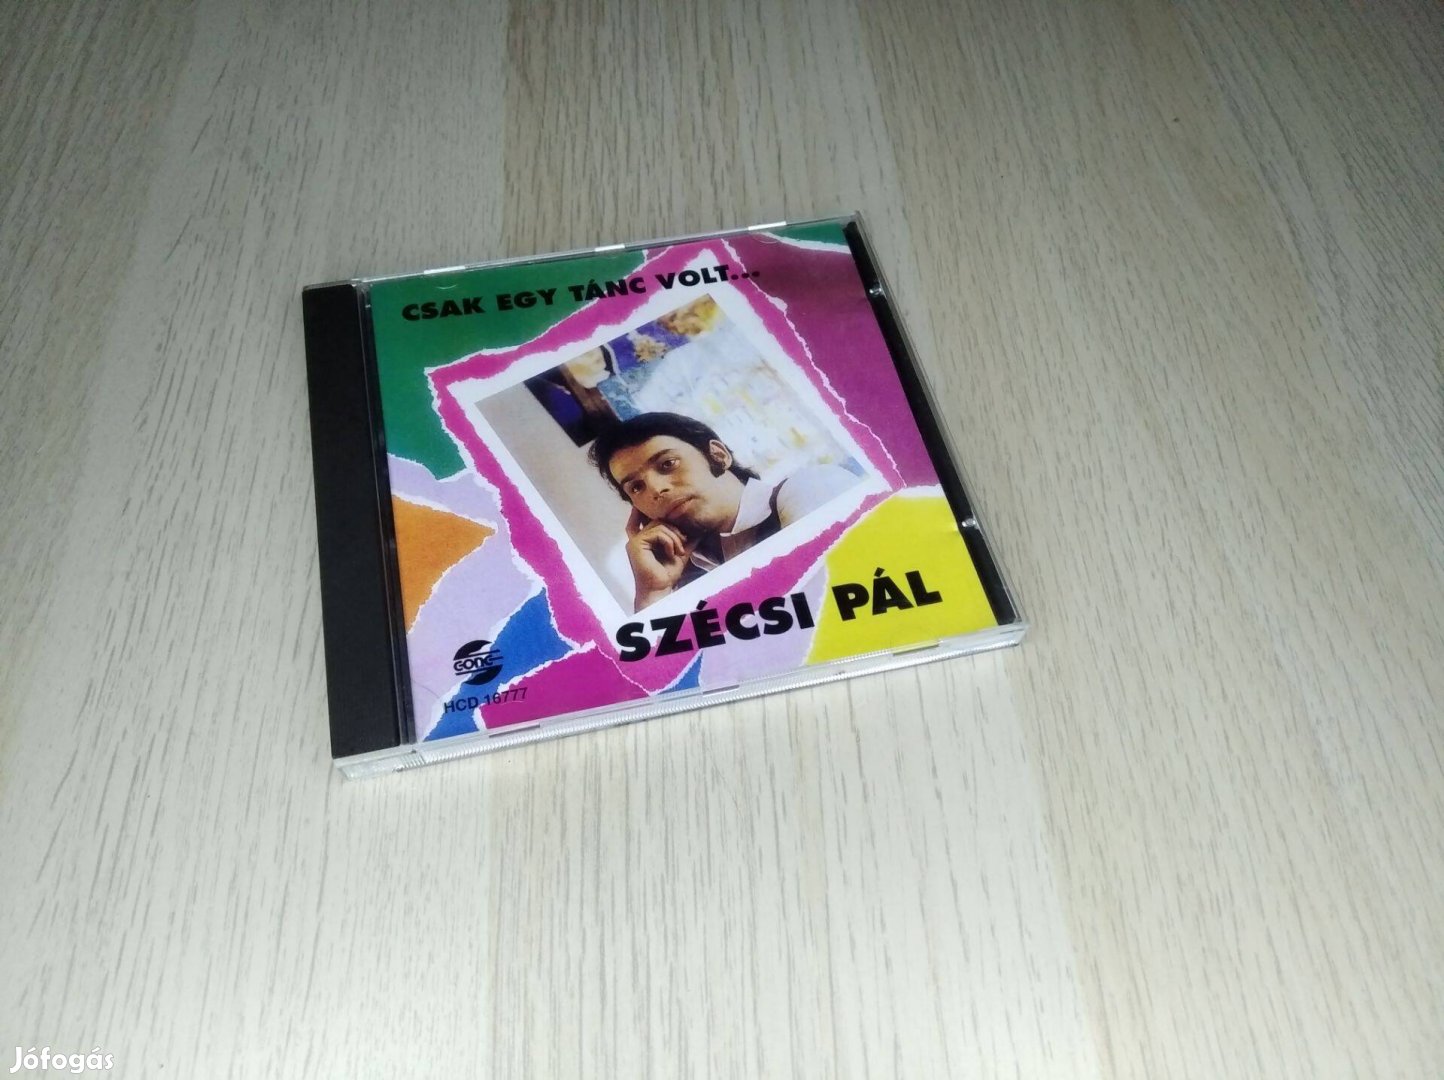 Szécsi Pál - Csak Egy Tánc Volt. / CD 1996